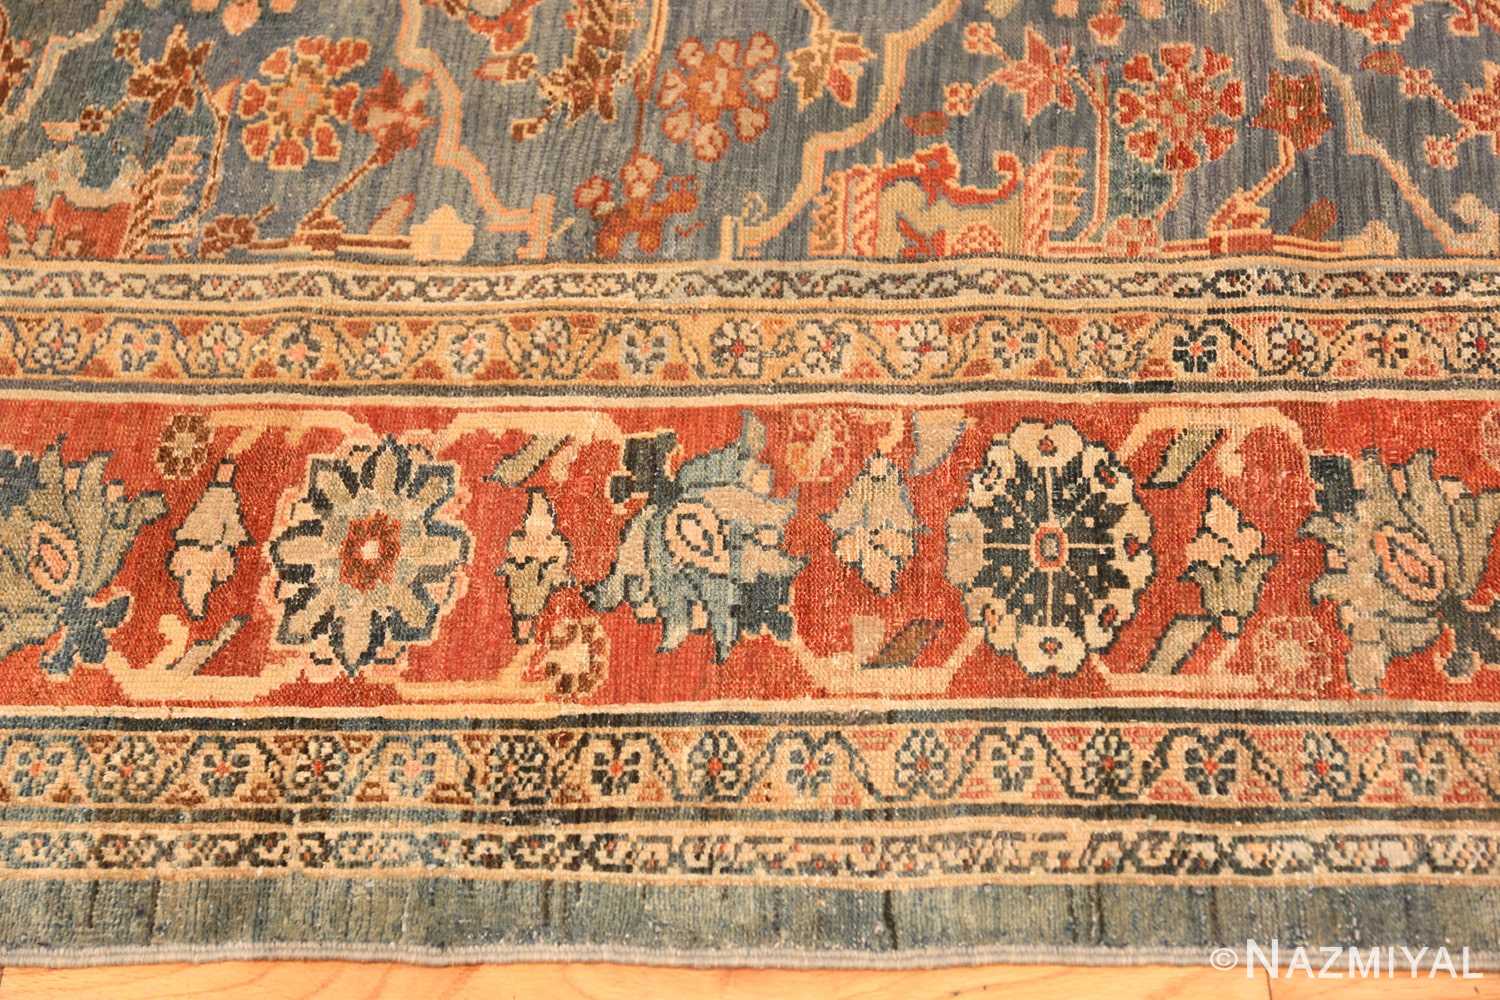 Border antique Persian Bibikabad rug 49515 by Nazmiyal